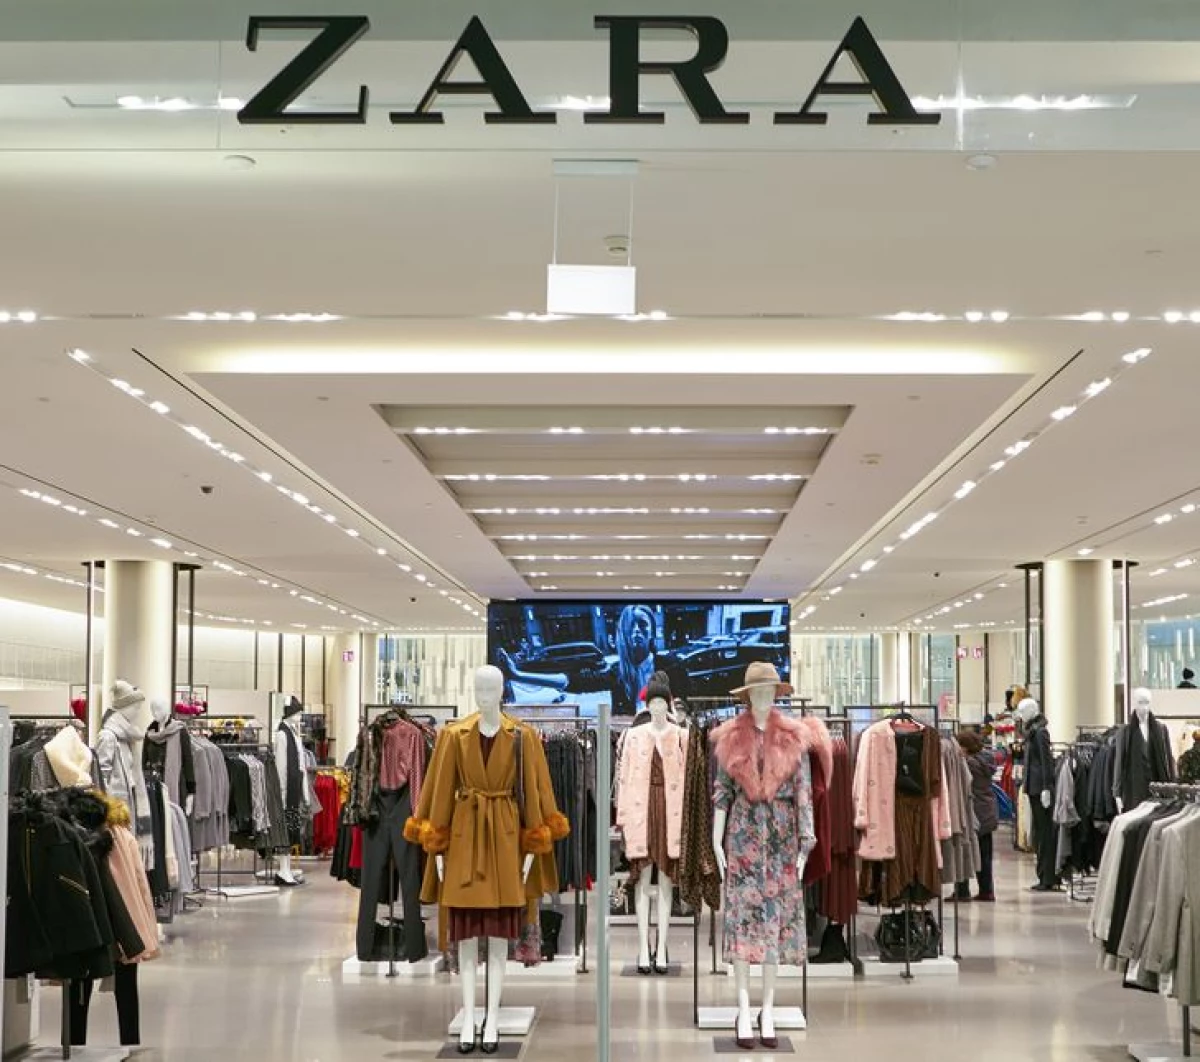 Hvor dårlig spansk gutt grunnla Zara-merkevaren, hvis klær er slitt bortsett fra ham 1454_2